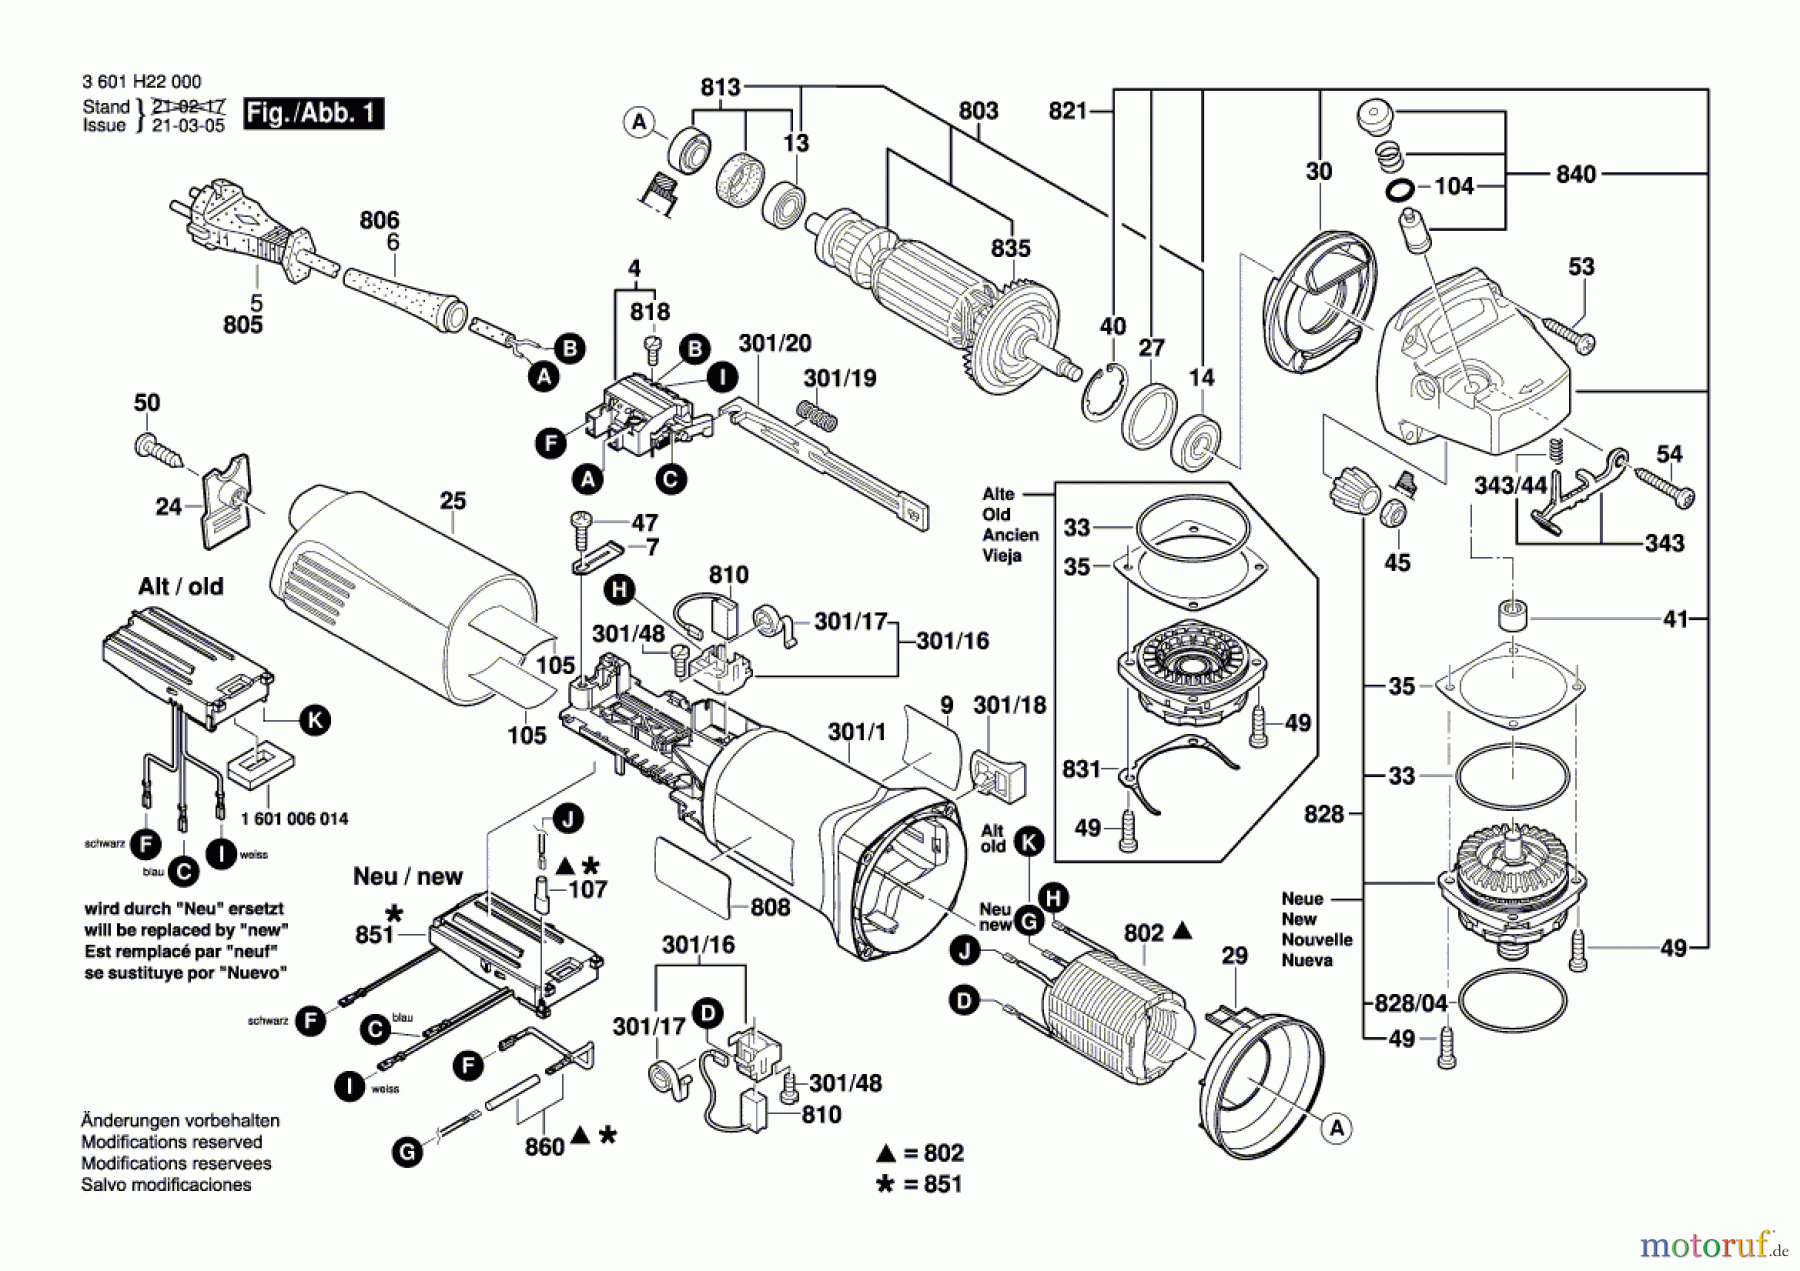  Bosch Werkzeug Winkelschleifer GWS 11-125 CI Seite 1